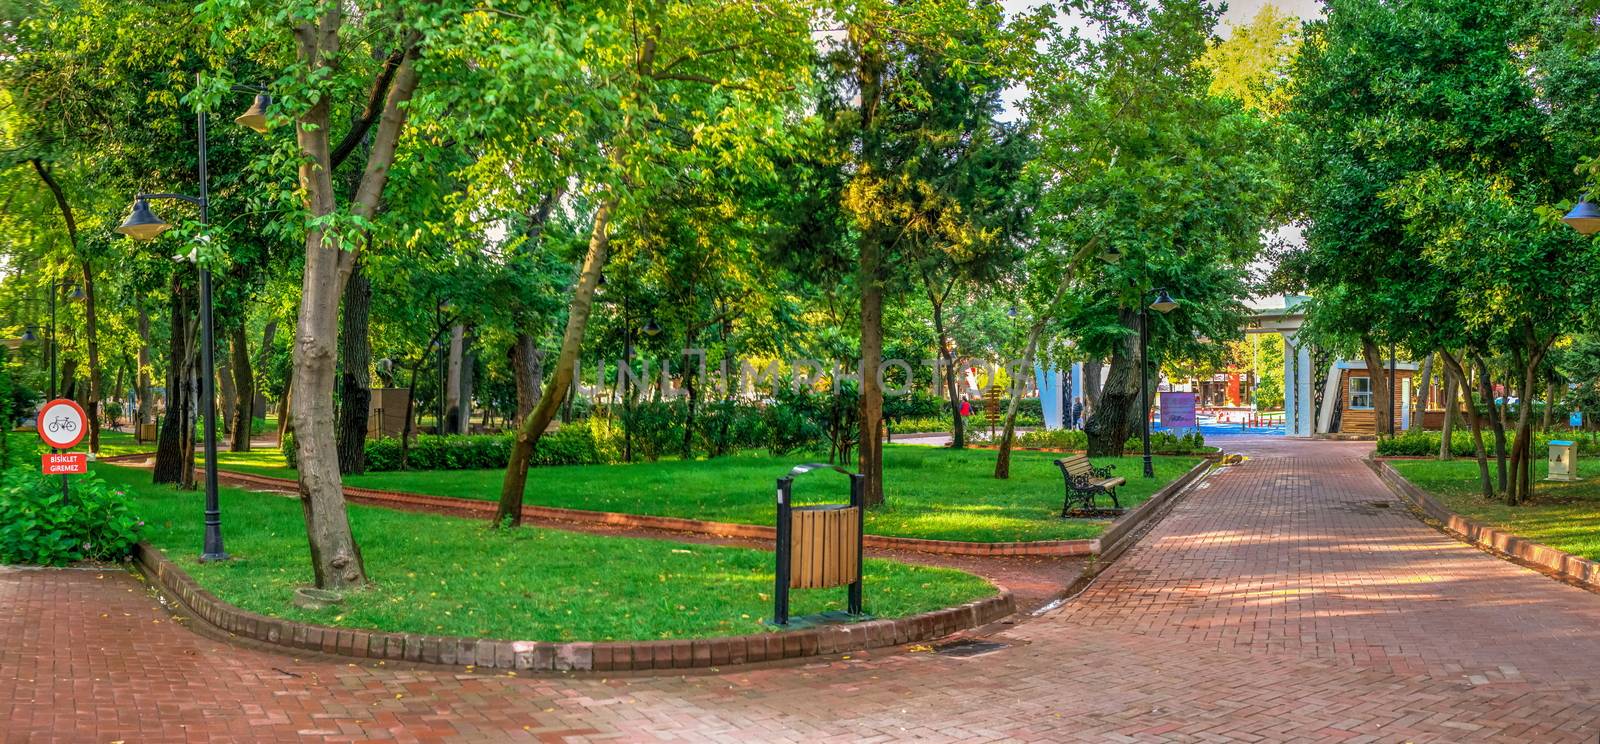 Public Garden of Canakkale in Turkey by Multipedia